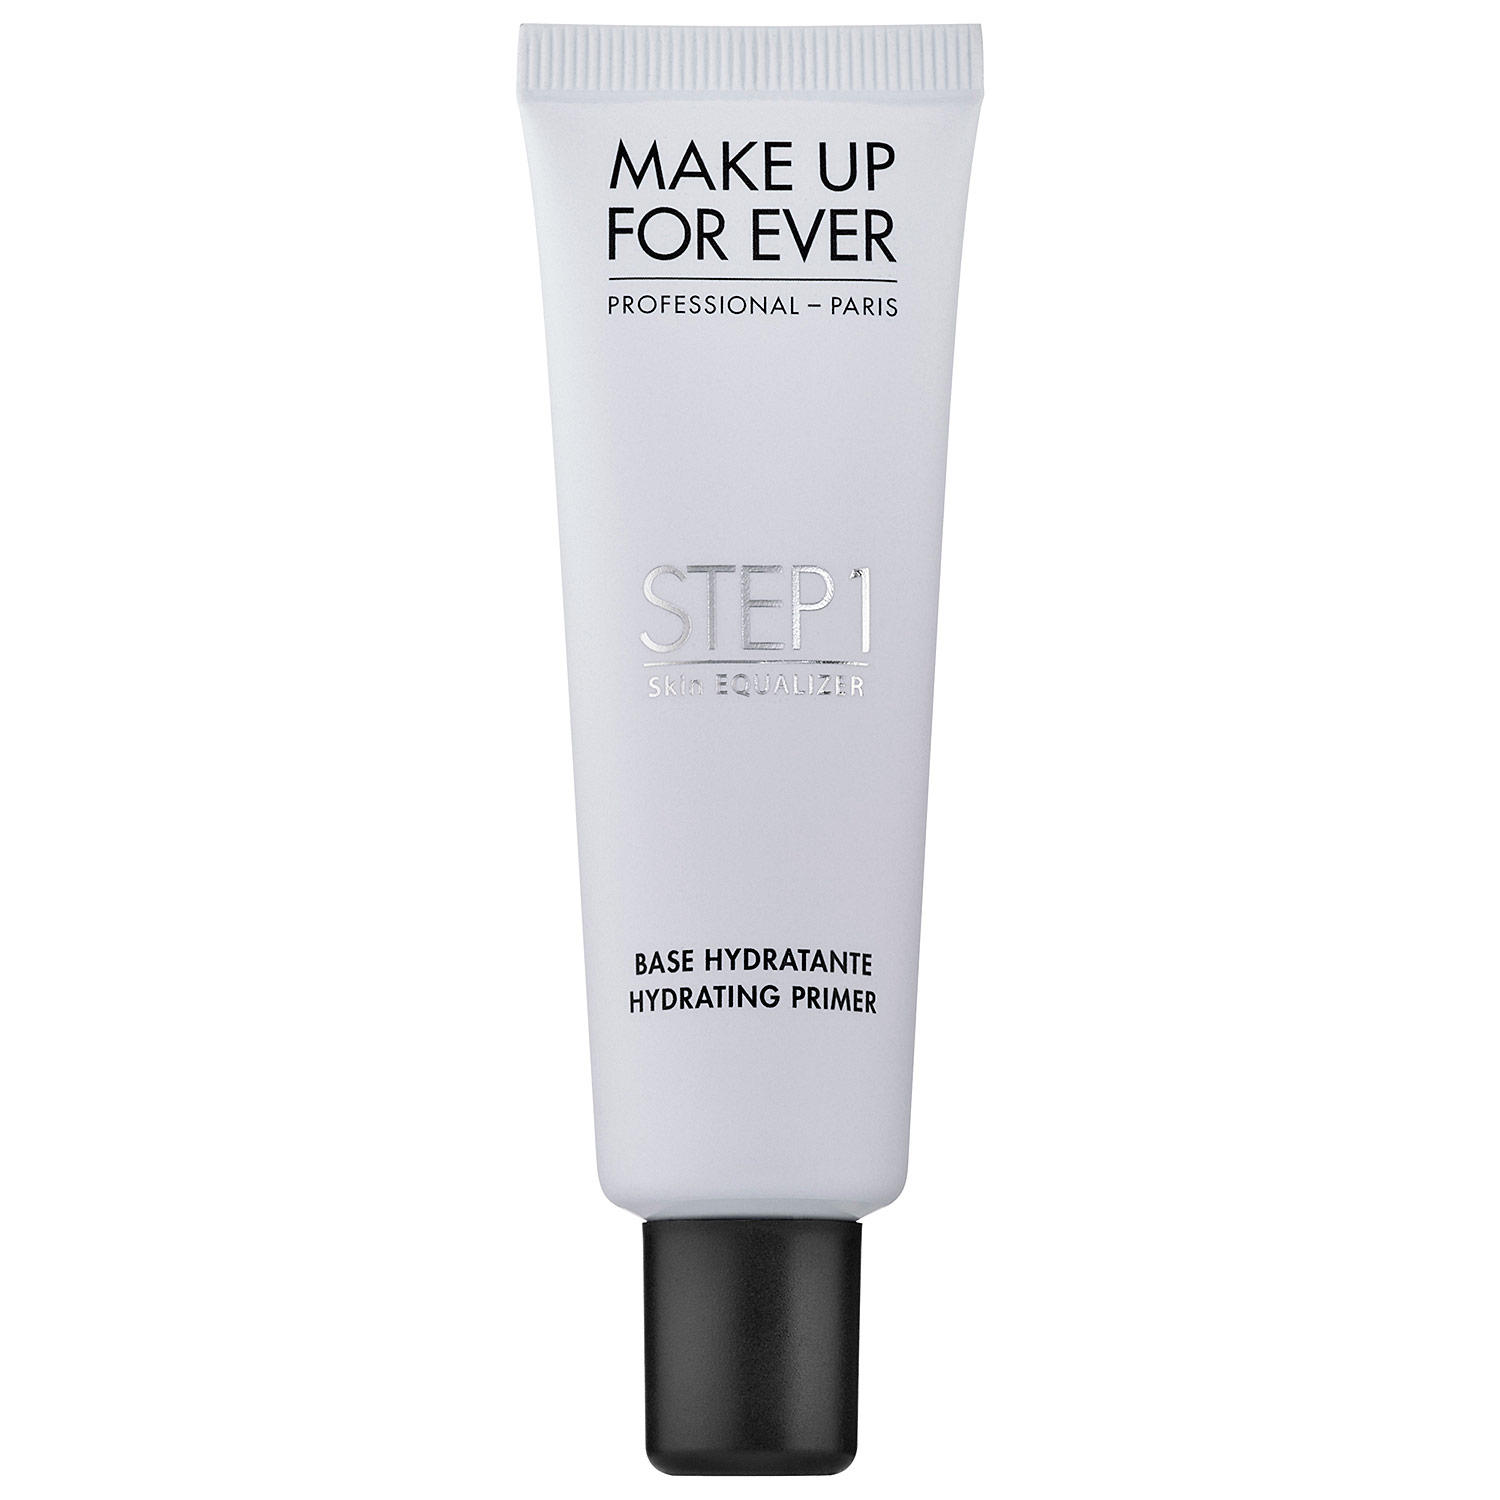 Makeup Forever Step 1 Skin Equalizer Hydrating Primer